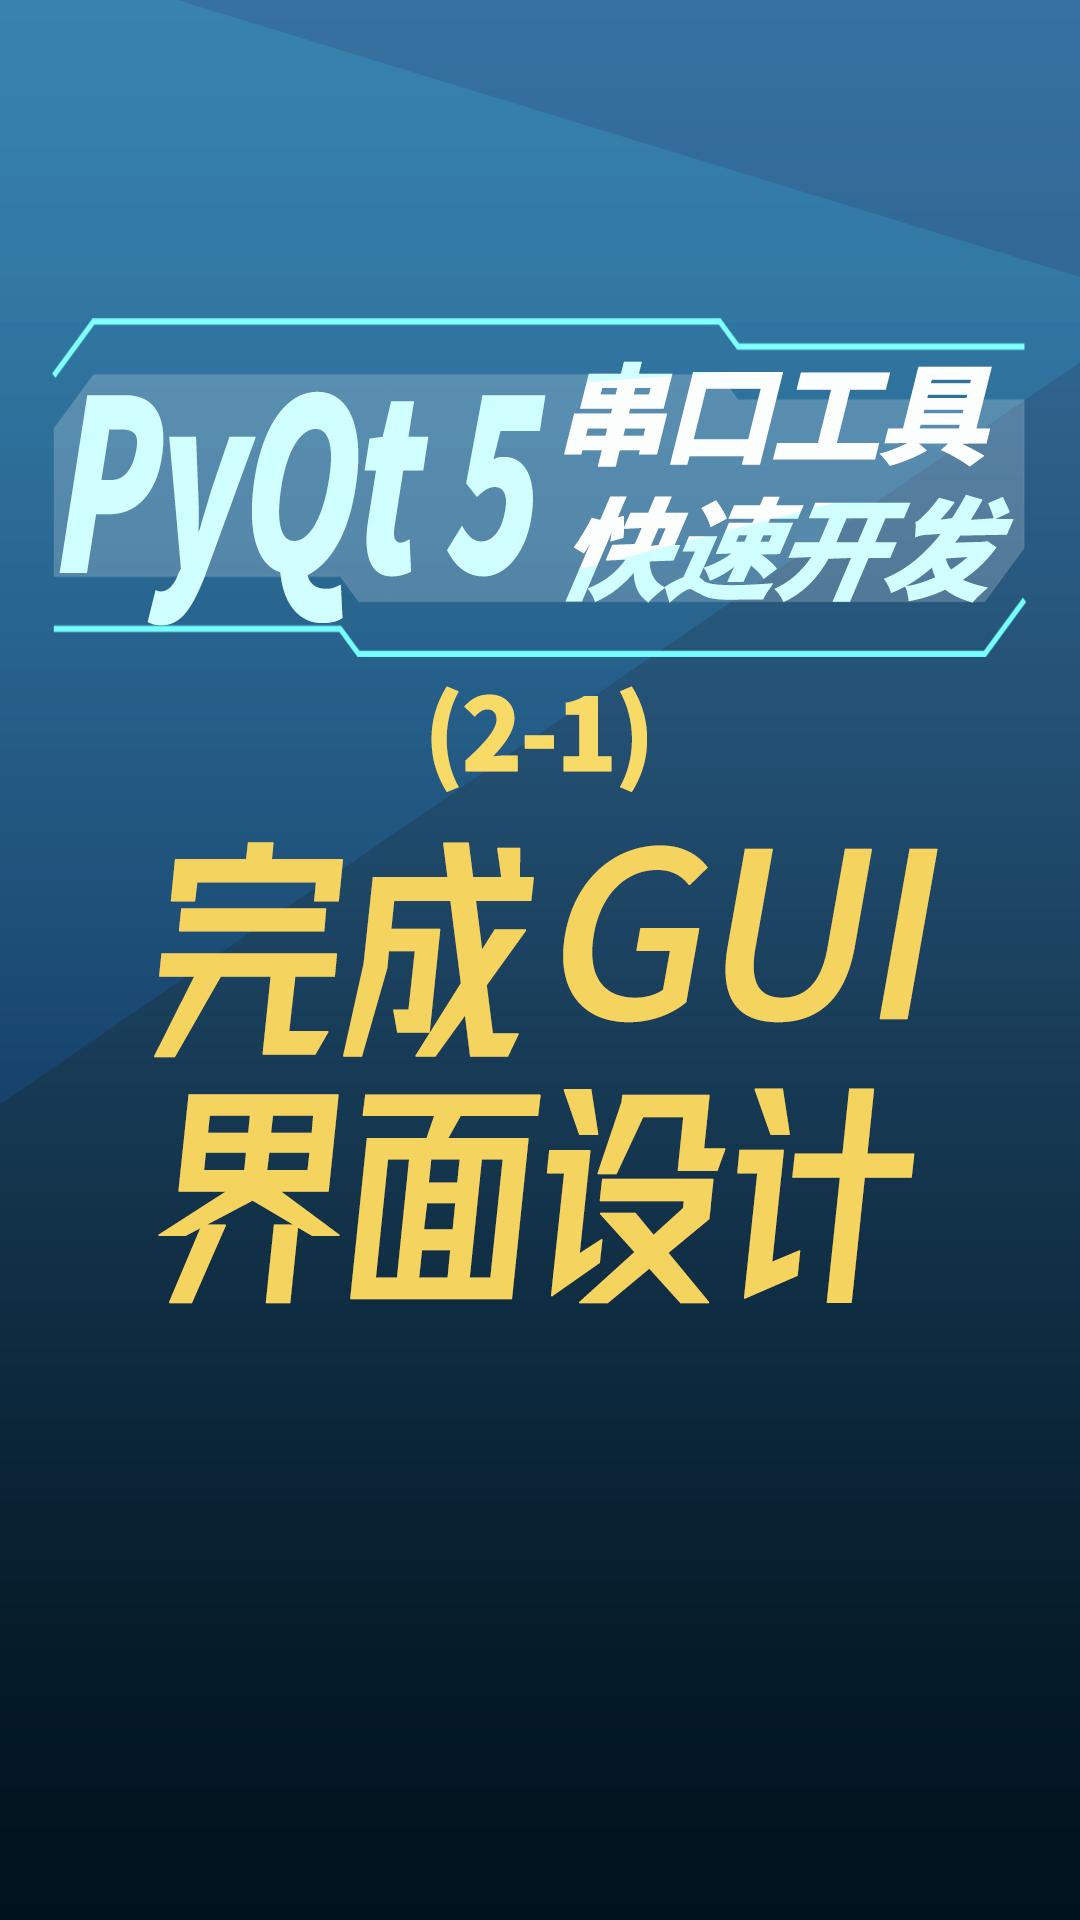 pyqt5串口工具快速开发 2-1完成GUI界面设计#串口工具开发 